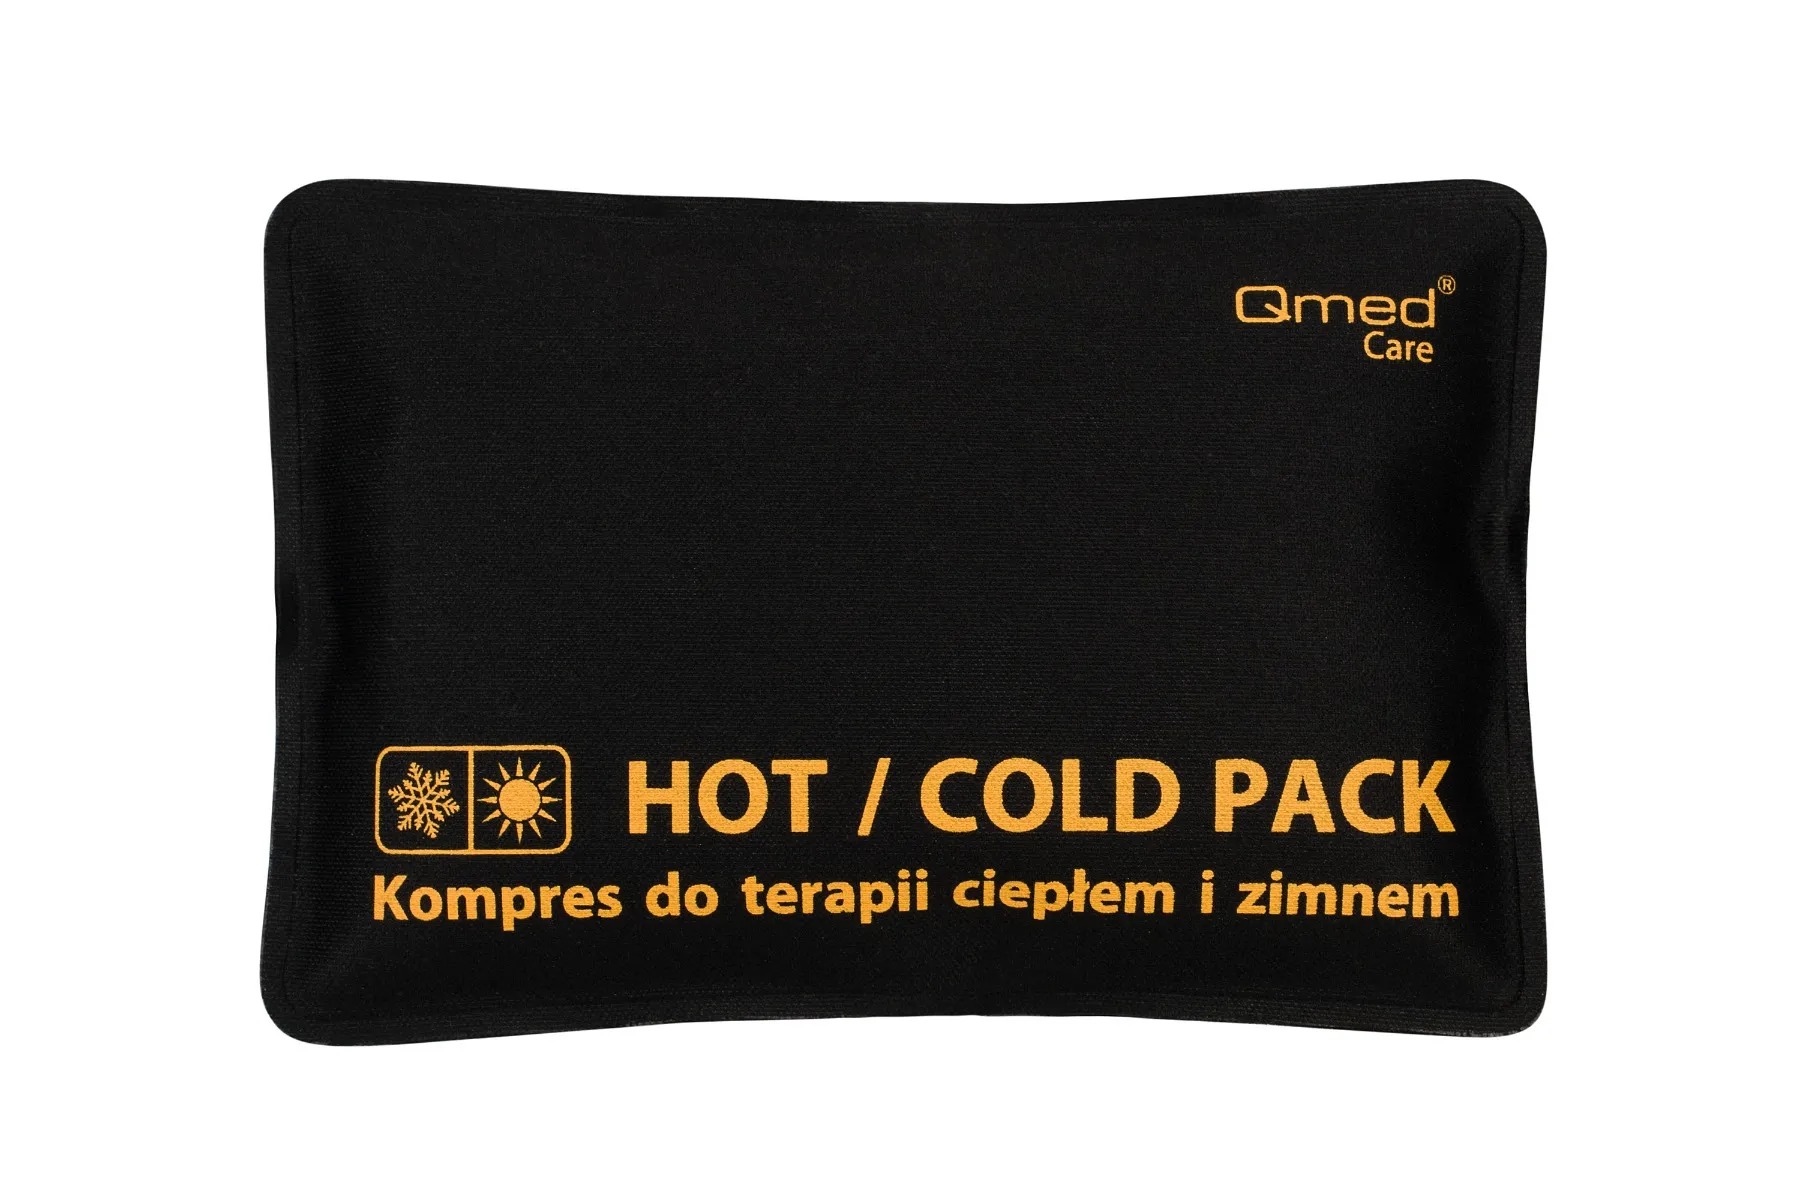 Qmed Hot Cold Pack kompres do terapii ciepłem i zimnem 10x15 cm, 1 szt. 